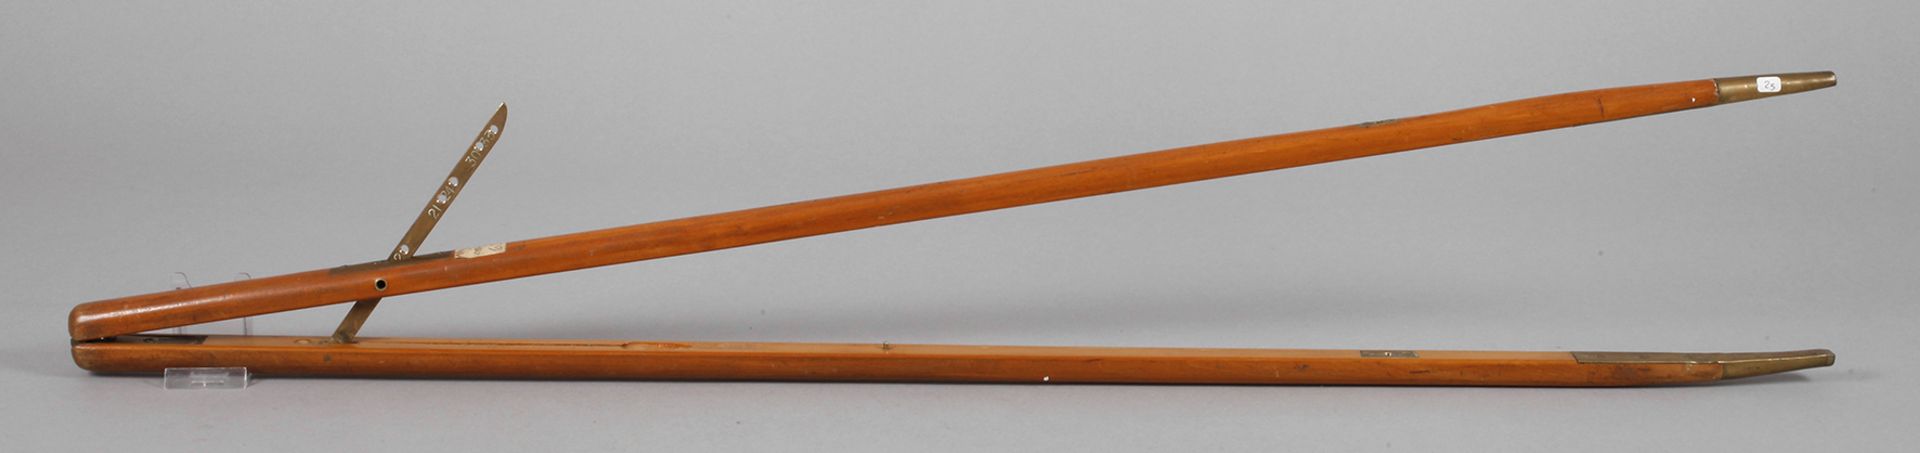 Schrittlängenmesser England, Ende 19. Jh., ungemarkt, klappbares Gehäuse aus Buchenholz mit massiven